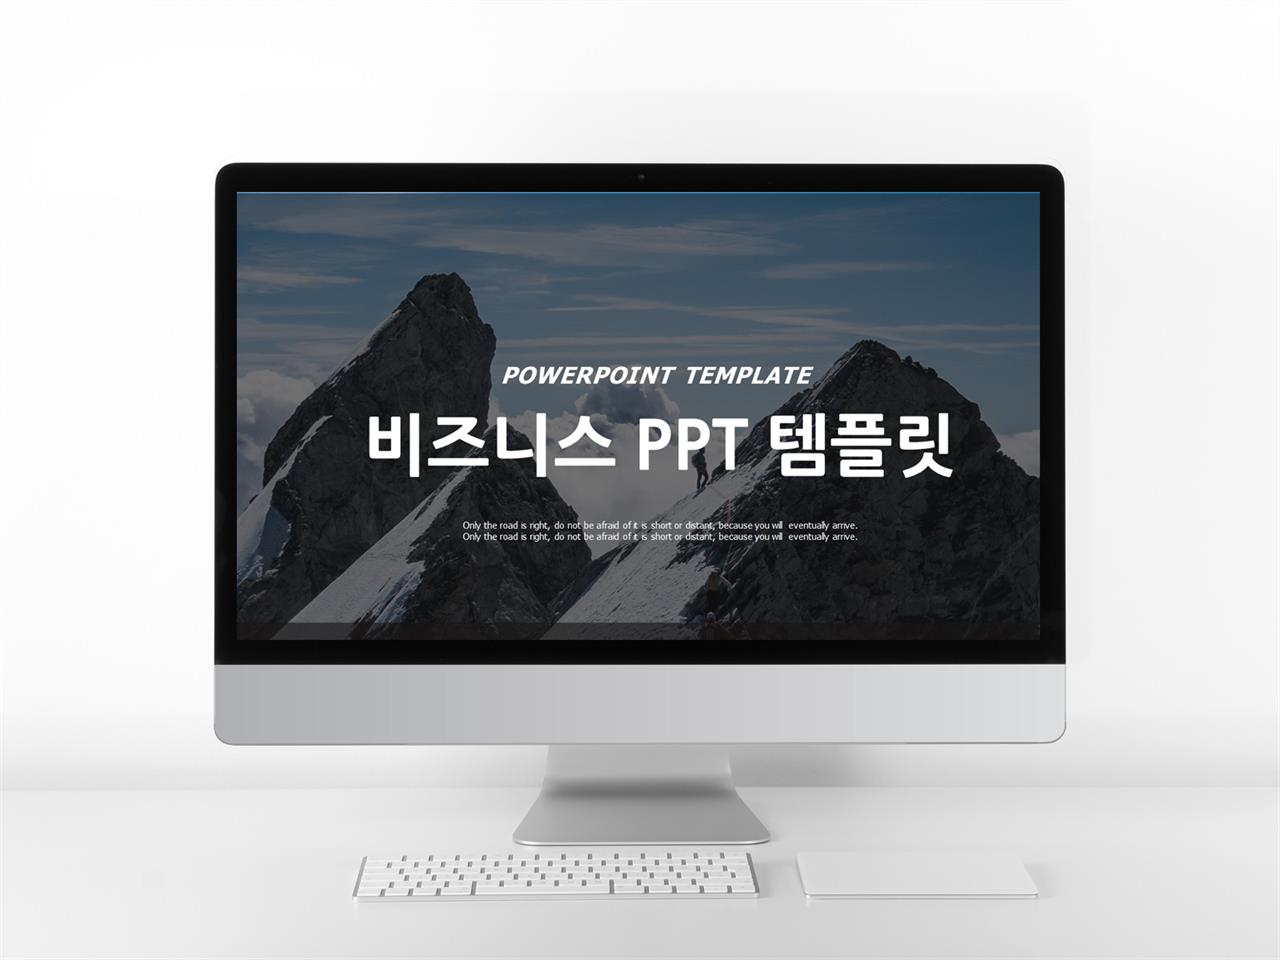 사업융자 검정색 패션느낌 고퀄리티 PPT탬플릿 제작 미리보기